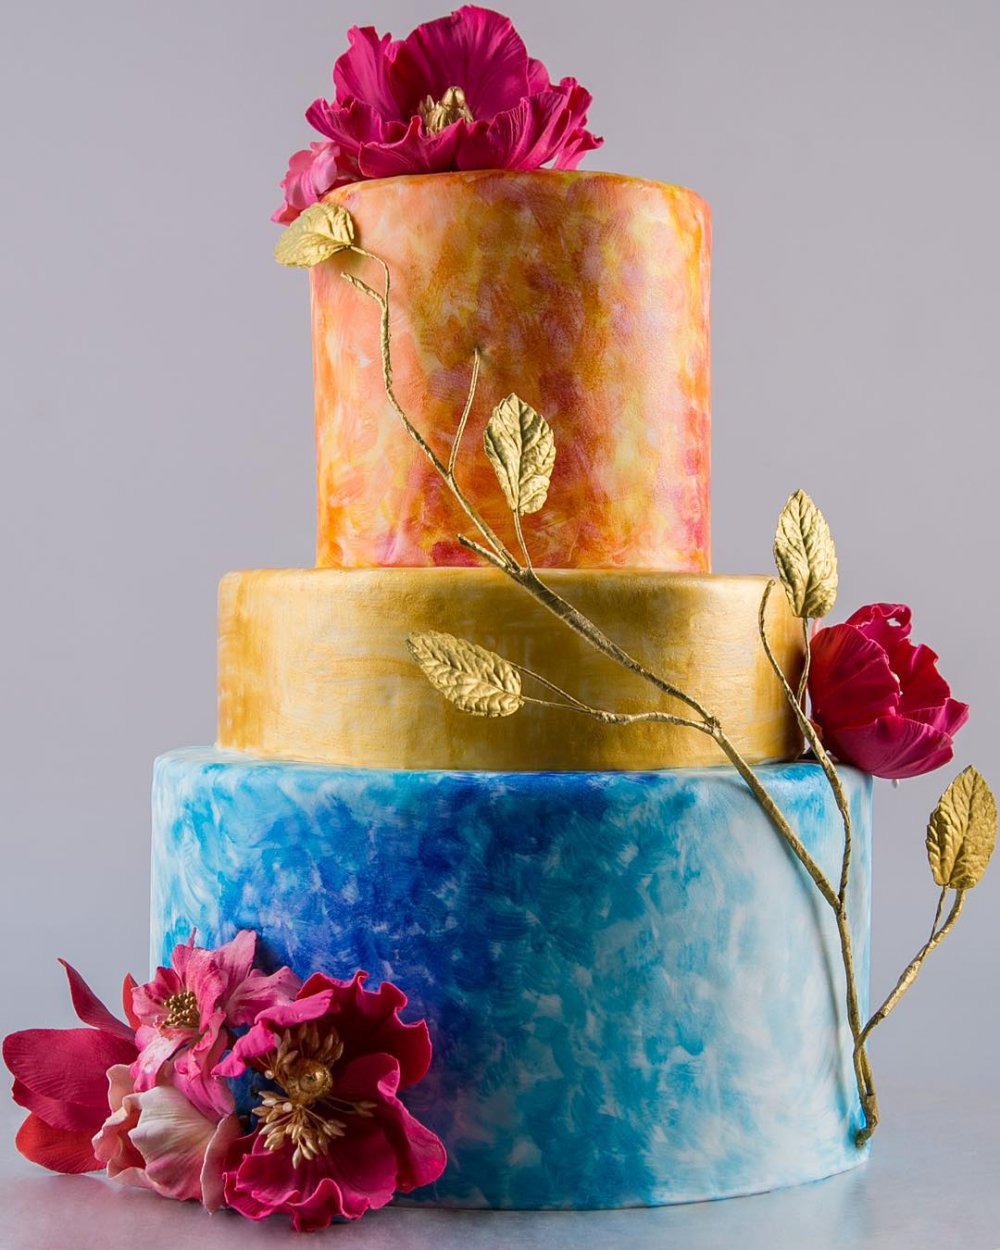 Яркий свадебный торт для осенней свадьбы кондитерской "Колесо времени".
Эксклюзивный свадебный торт на заказ - исключительно натуральный, авторский декор. На дегустации 15 начинок на выбор. Доставка. Заказ на сайте нашей кондитерской.